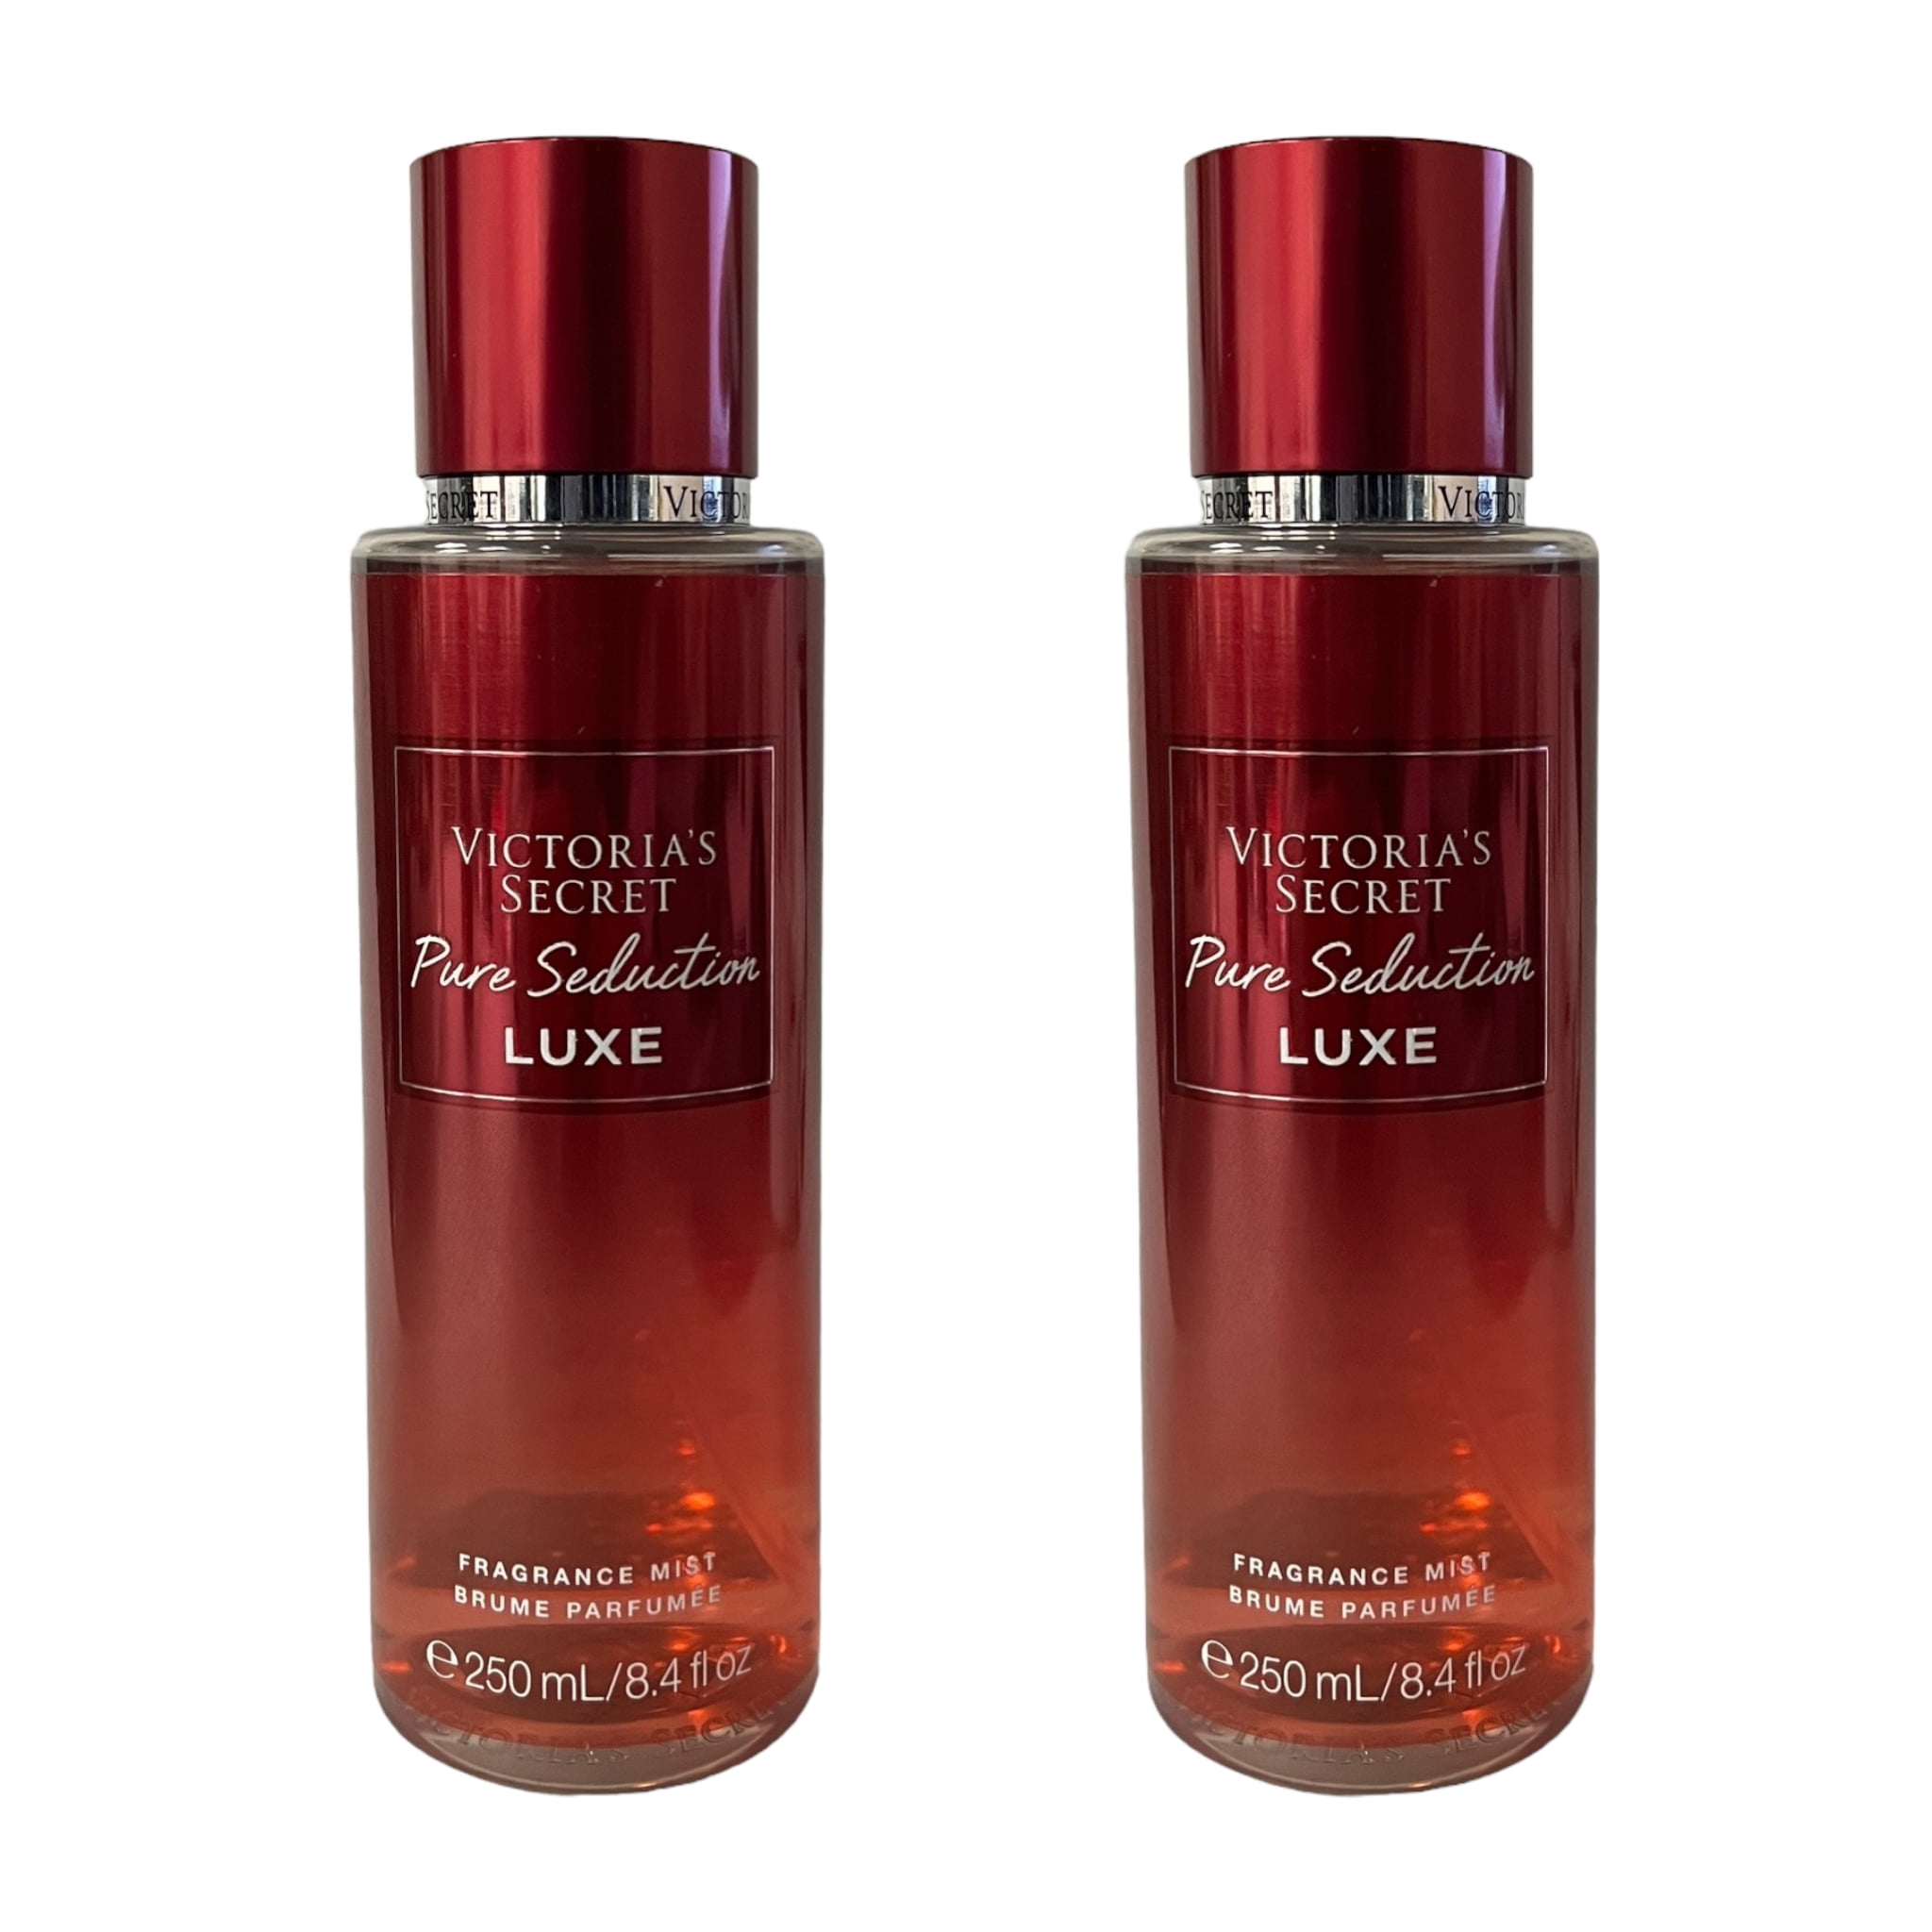 Victoria's Secret Pure Seduction Luxe Fragrance Mist Set 8.4 fl oz 2 Pack